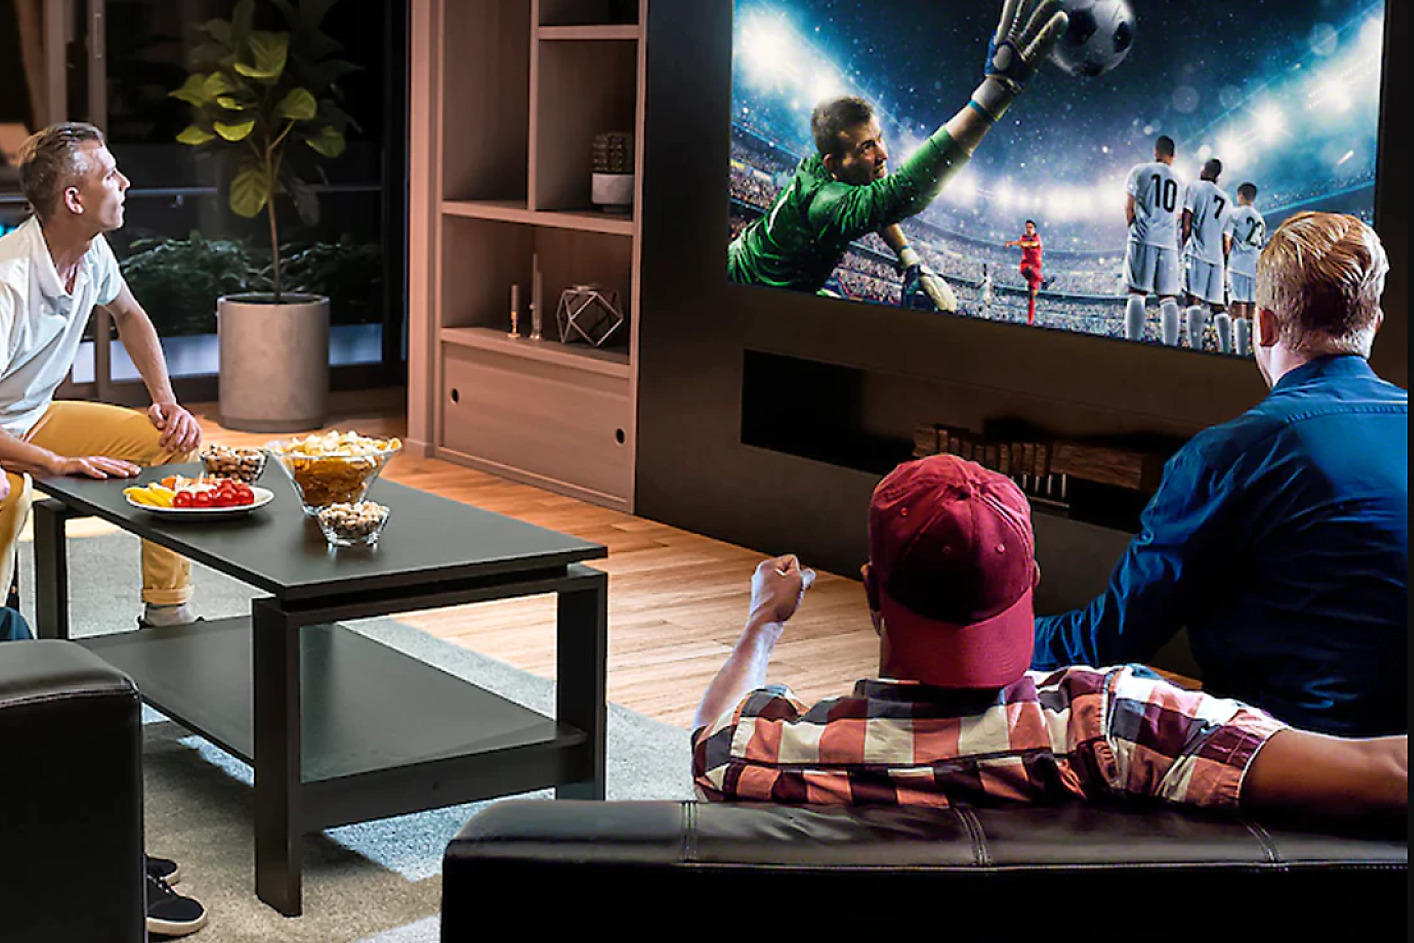 Dans un salon, trois personnes qui regardent un téléviseur affichant l'image d'un gardien de but en plein saut pour attraper un ballon de football.